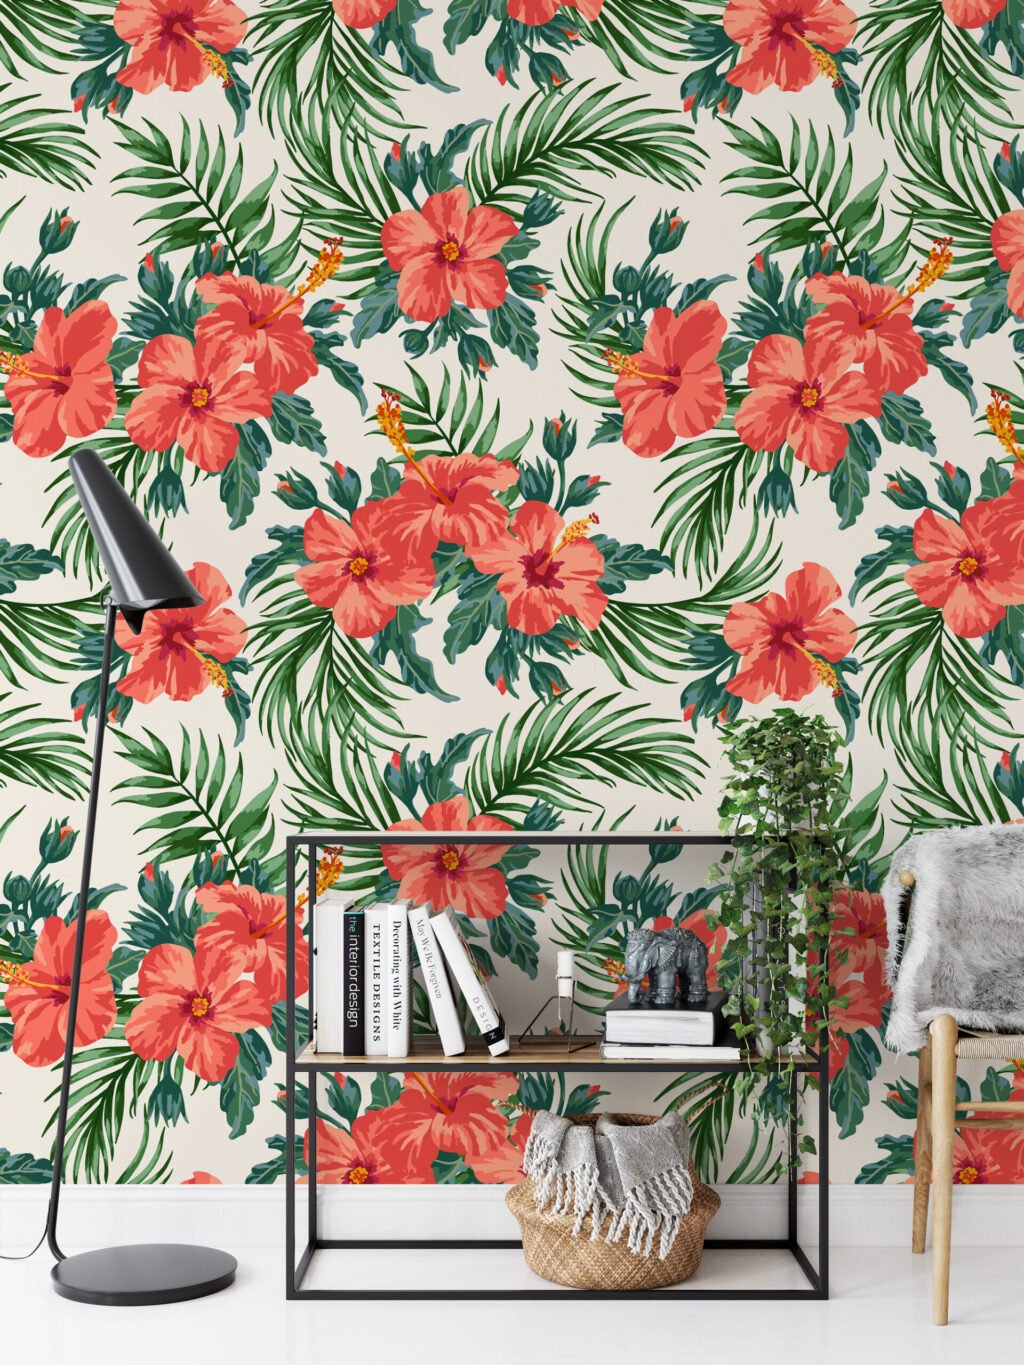 Şeftali Pembe Çiçek ve Yaprak Desenli Duvar Kağıdı Tasarımı, Yemyeşil Tropik Duvar Posteri Çiçekli Duvar Kağıtları 3